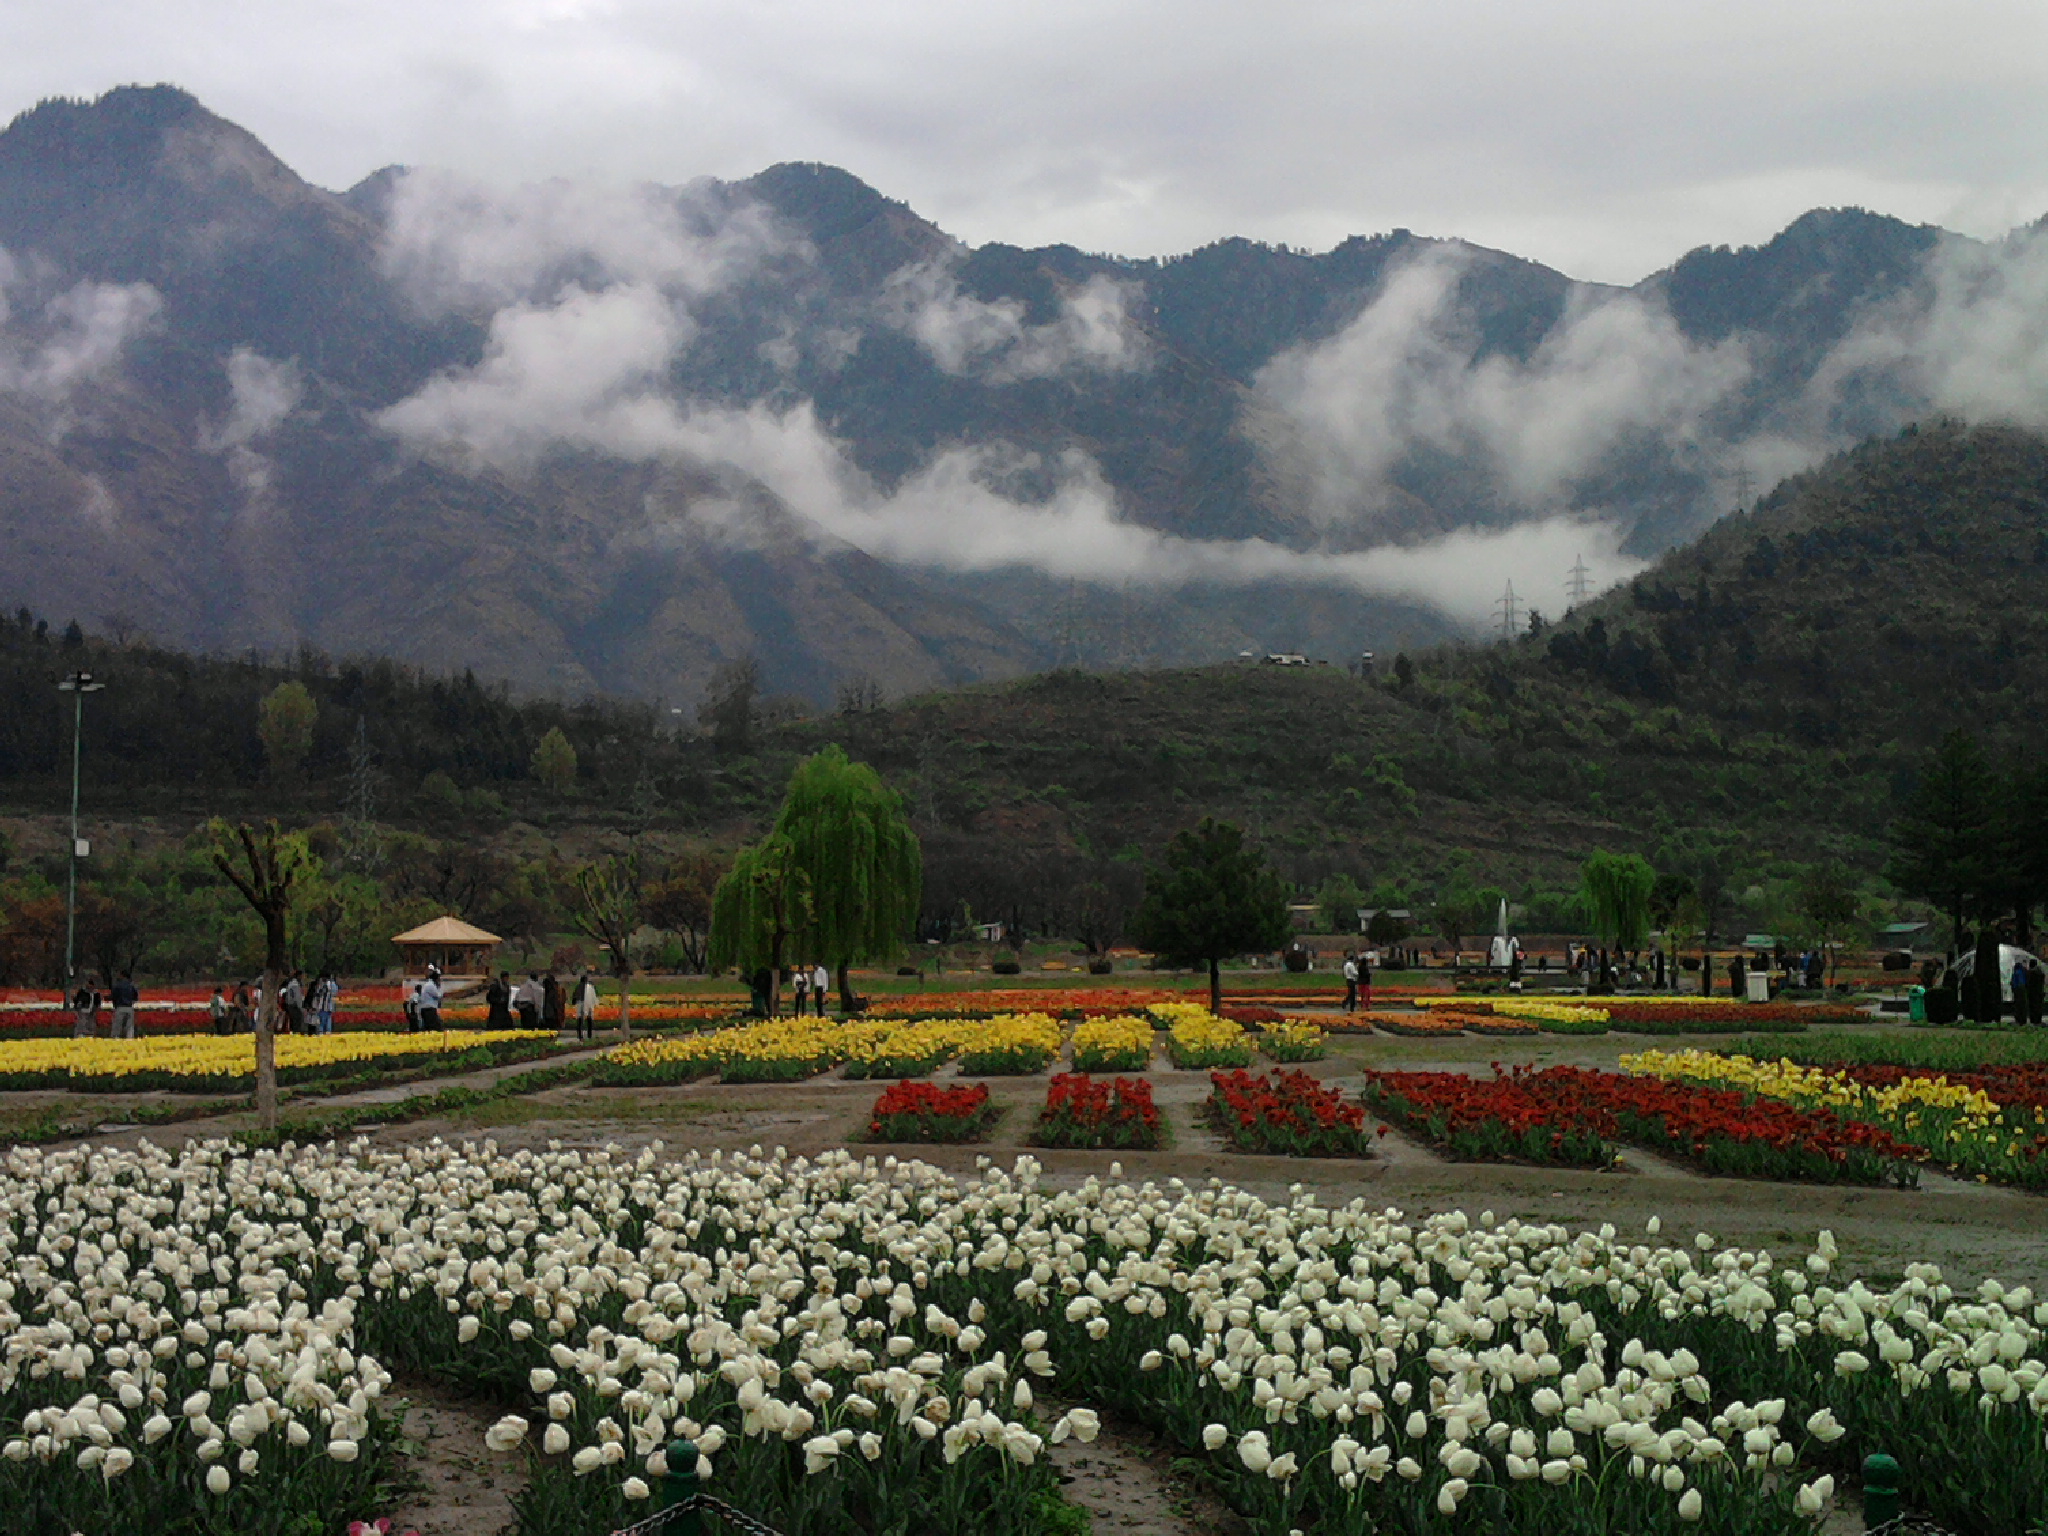 Kashmir Tulip